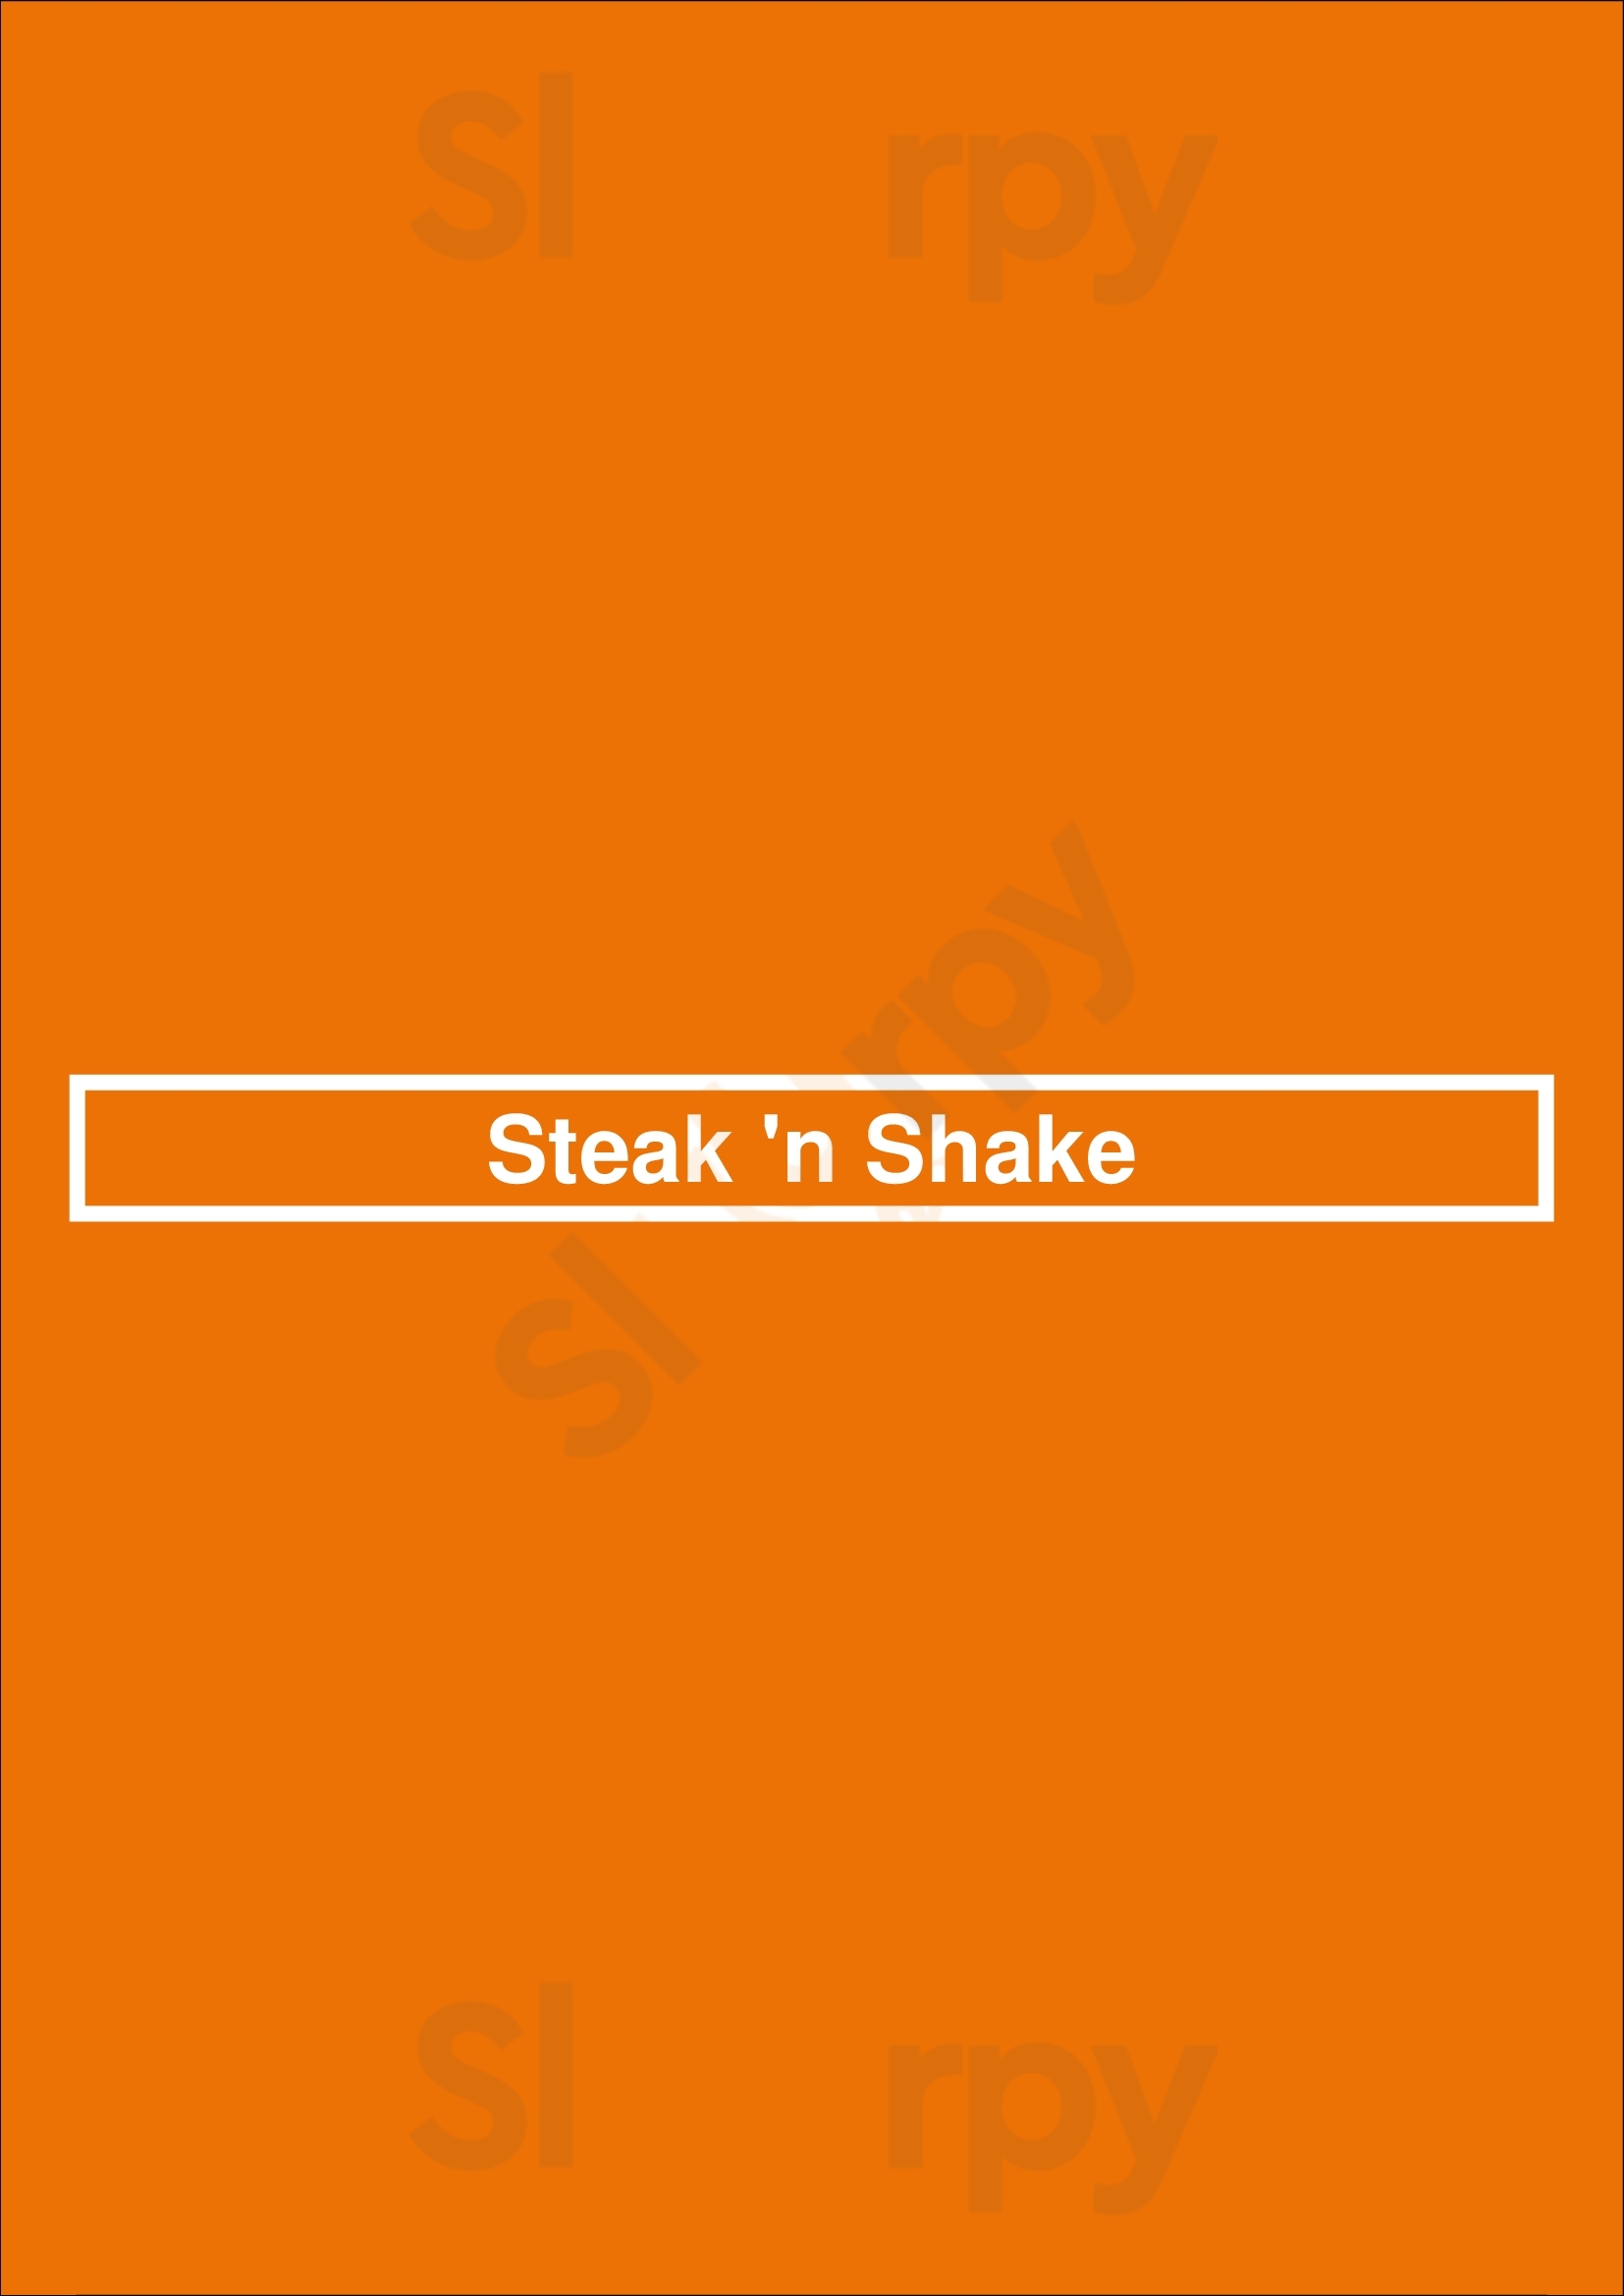 Steak 'n Shake Nashville Menu - 1